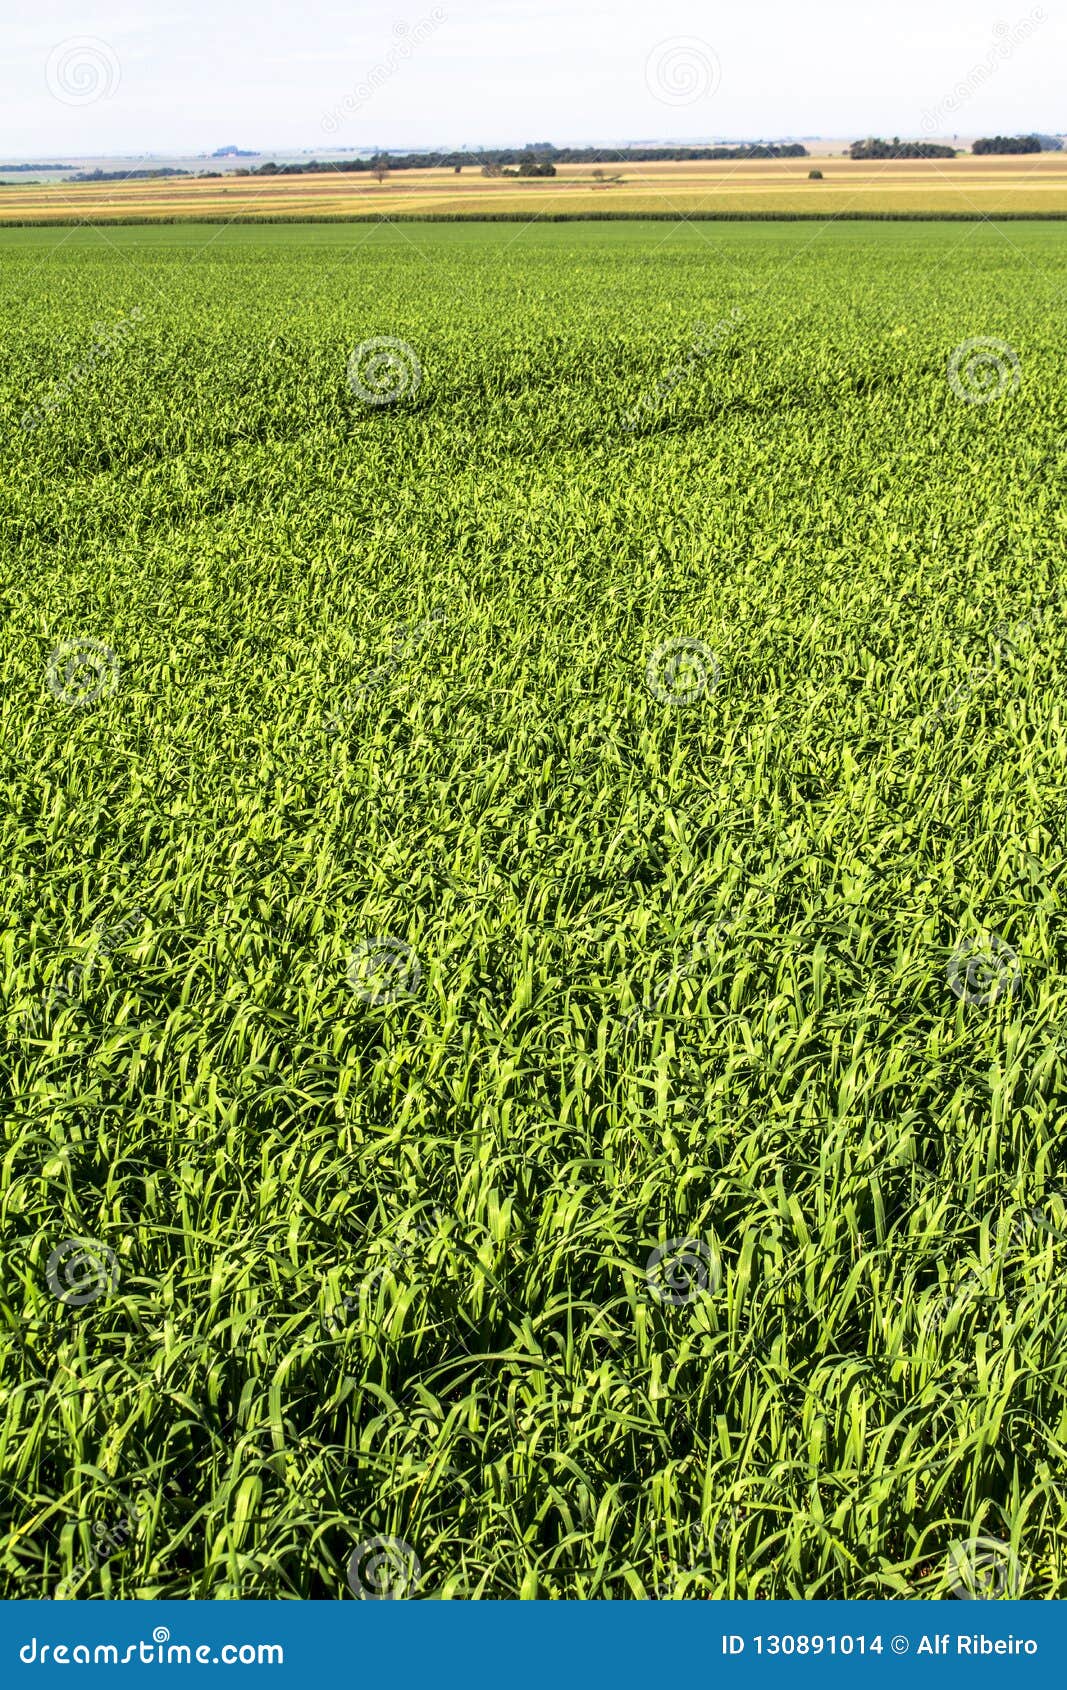 view of green oats fiel